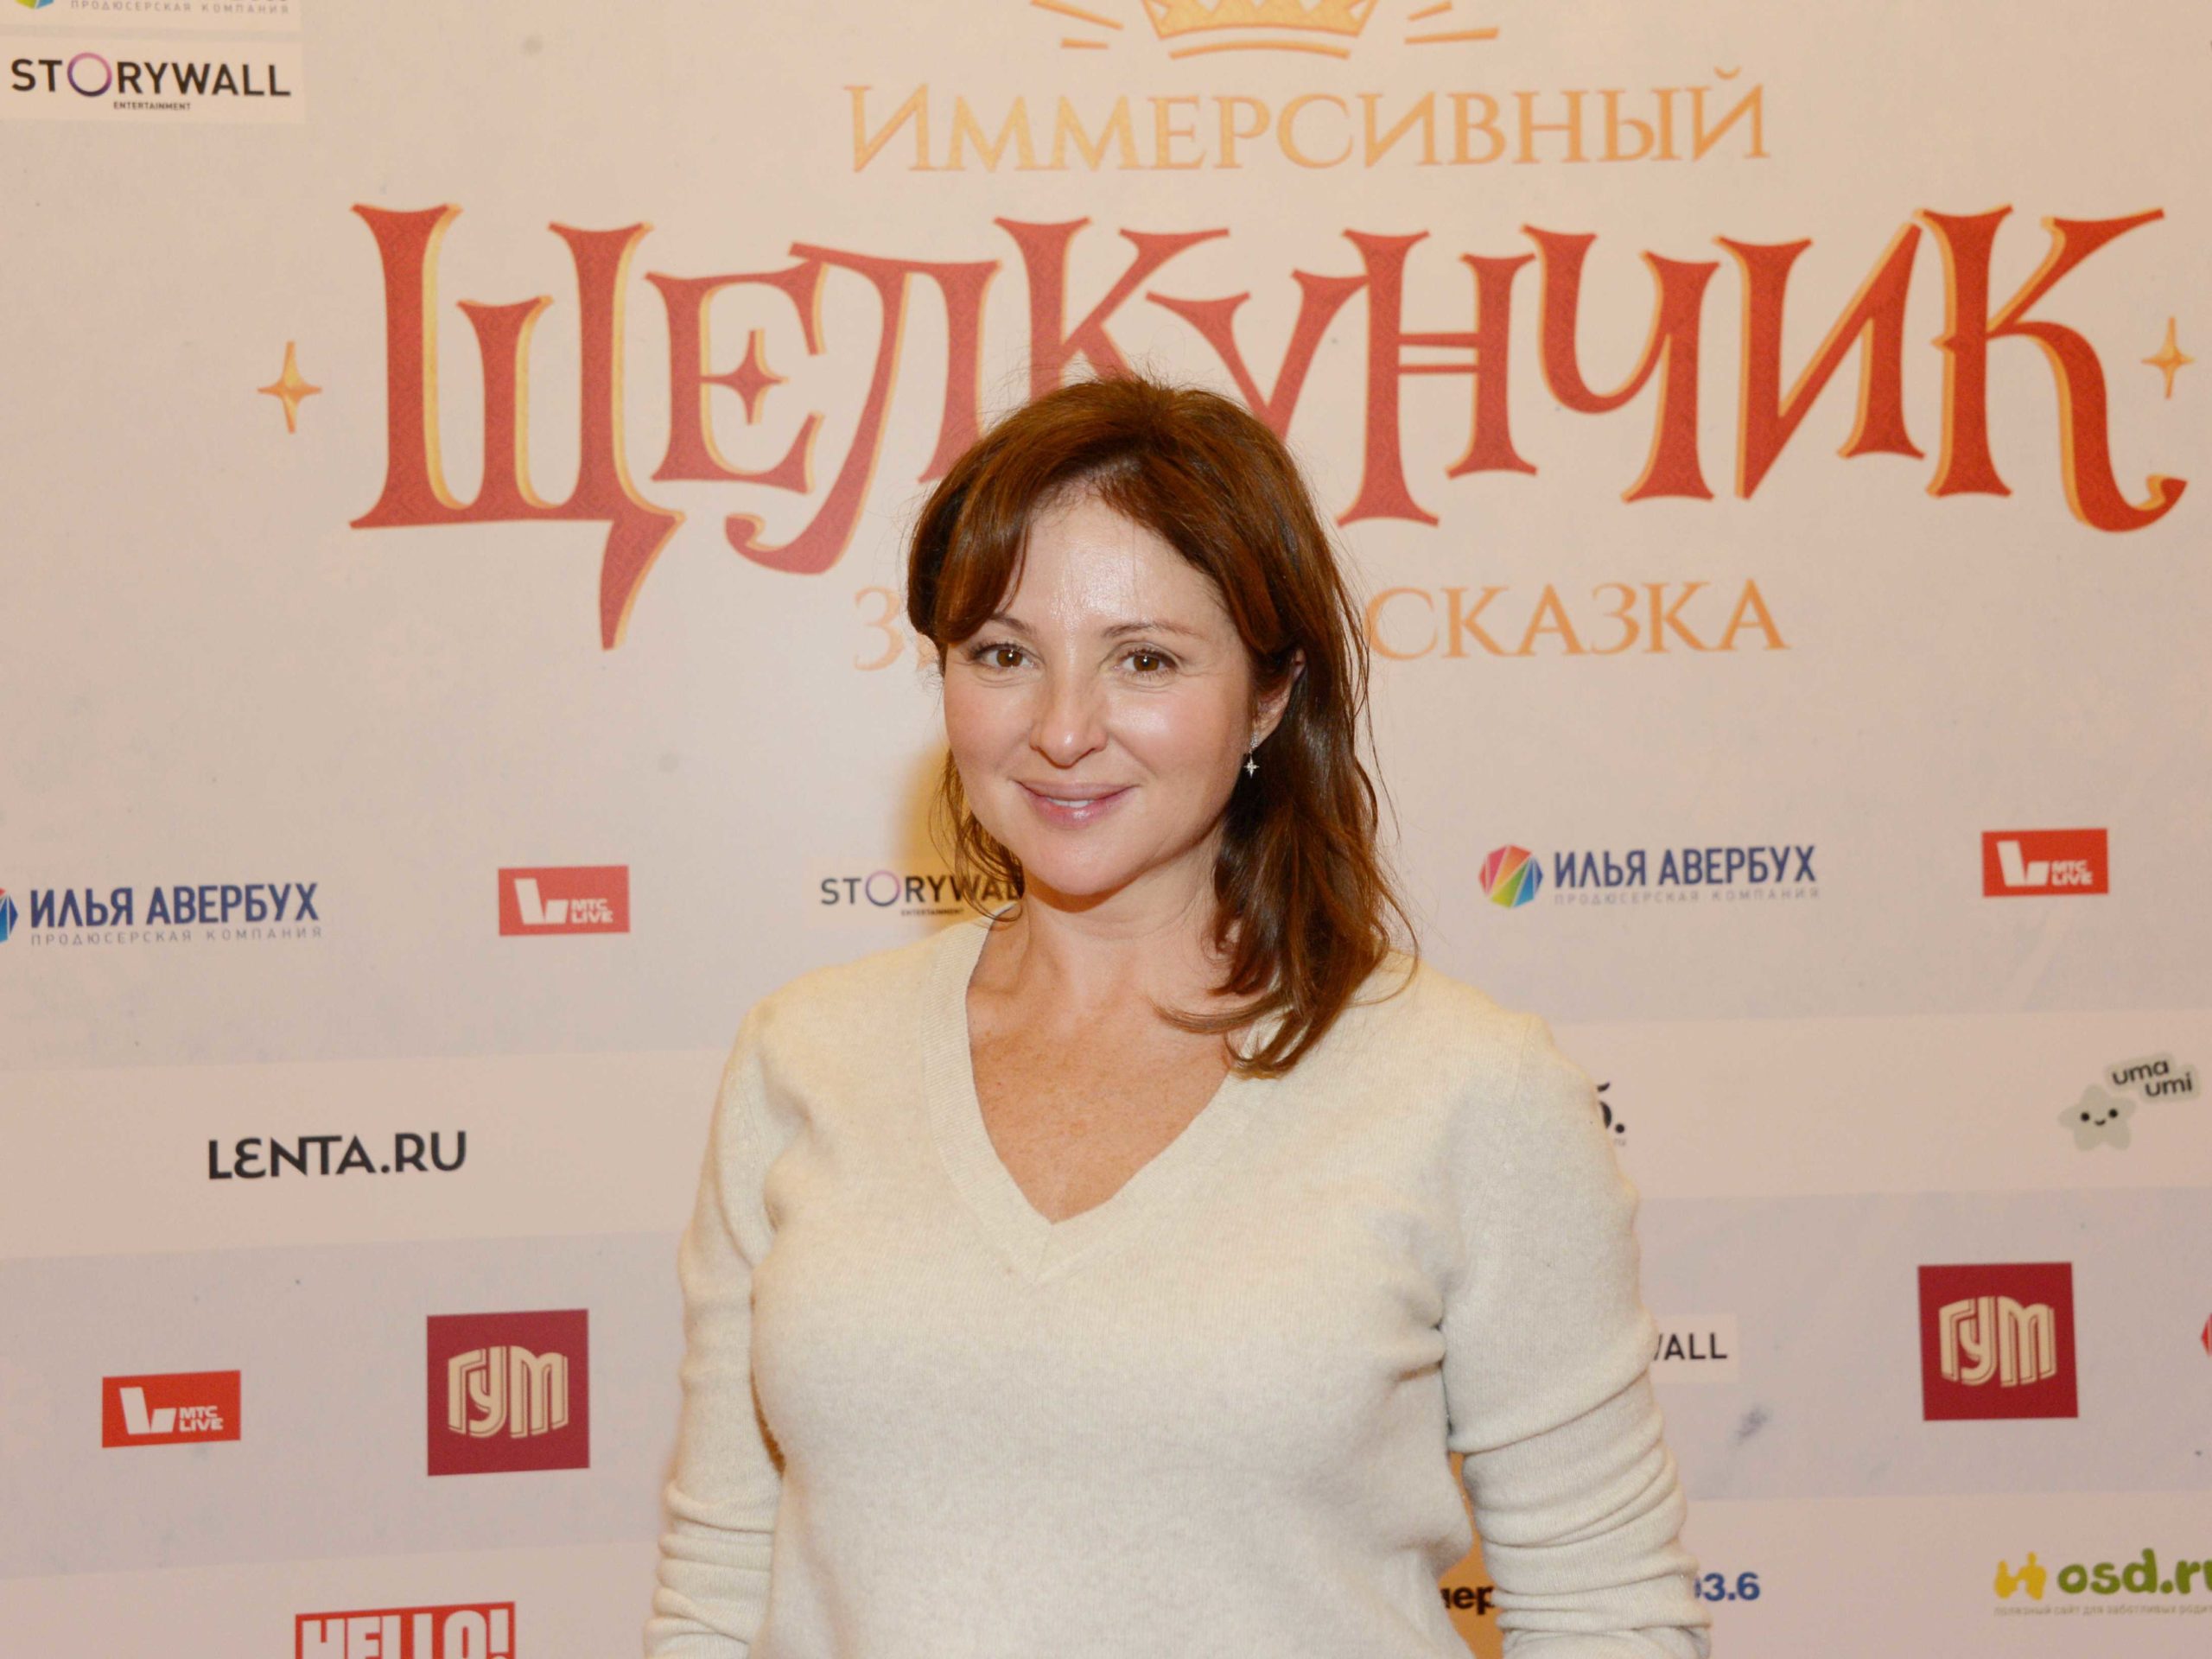 Стареющая, но счастливая: Анна Банщикова появилась на красной дорожке в  прозрачном наряде - Экспресс газета